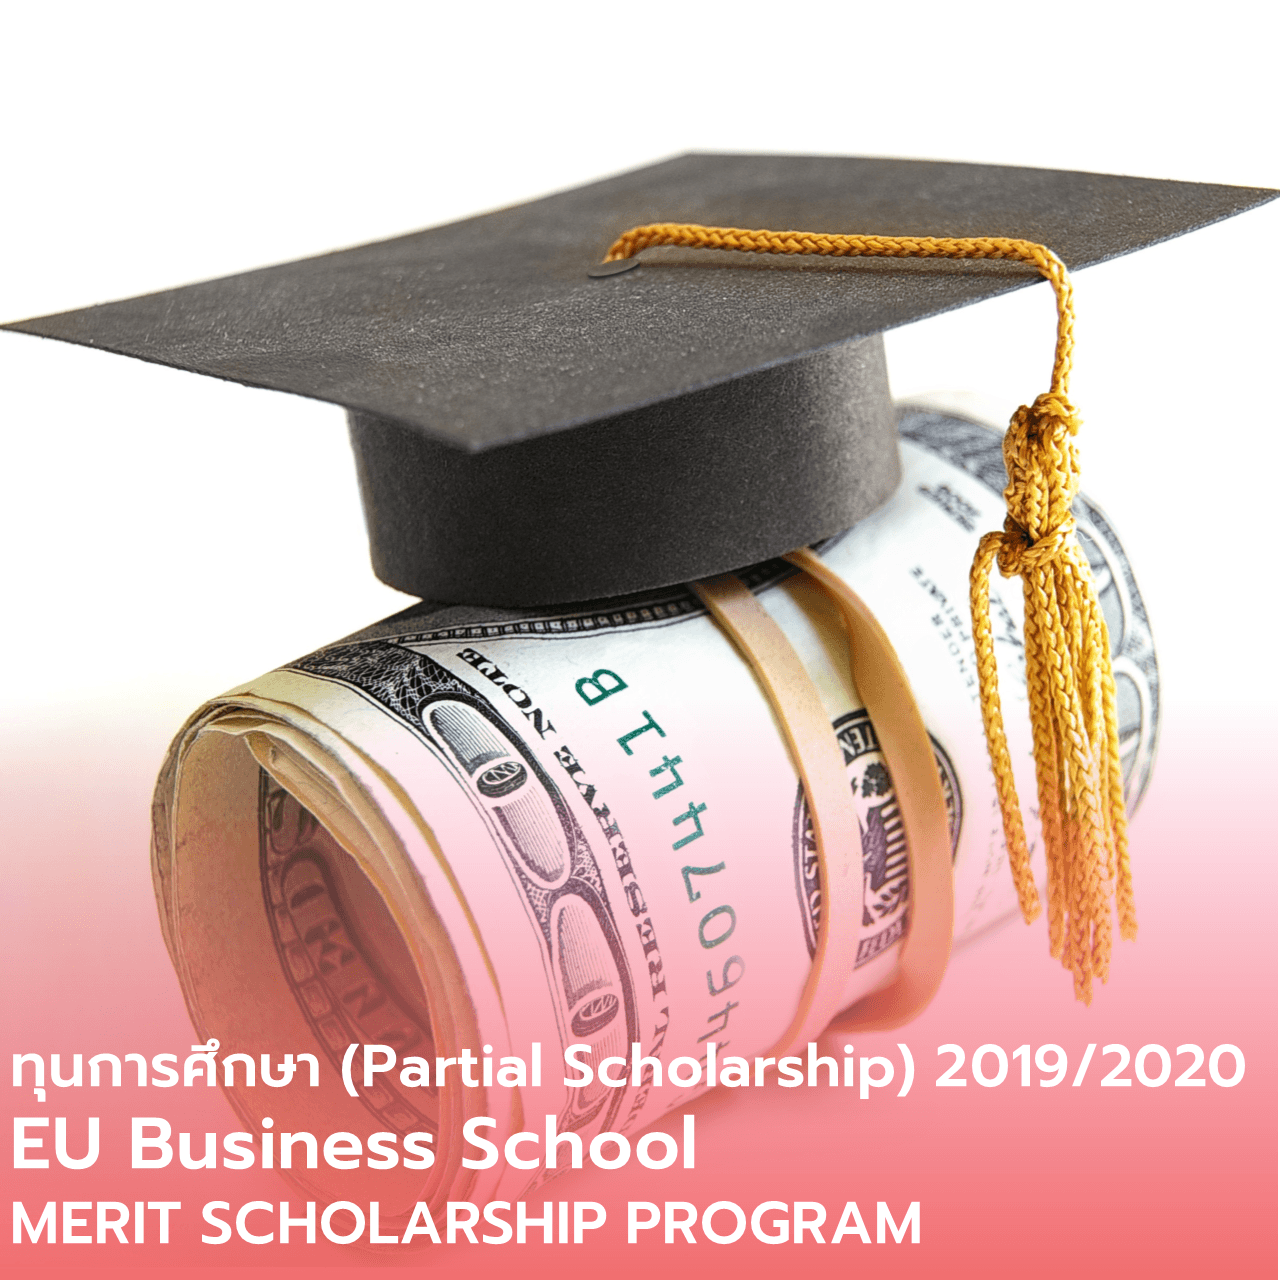  ทุนการศึกษา (Partial Scholarship)  EU Business School